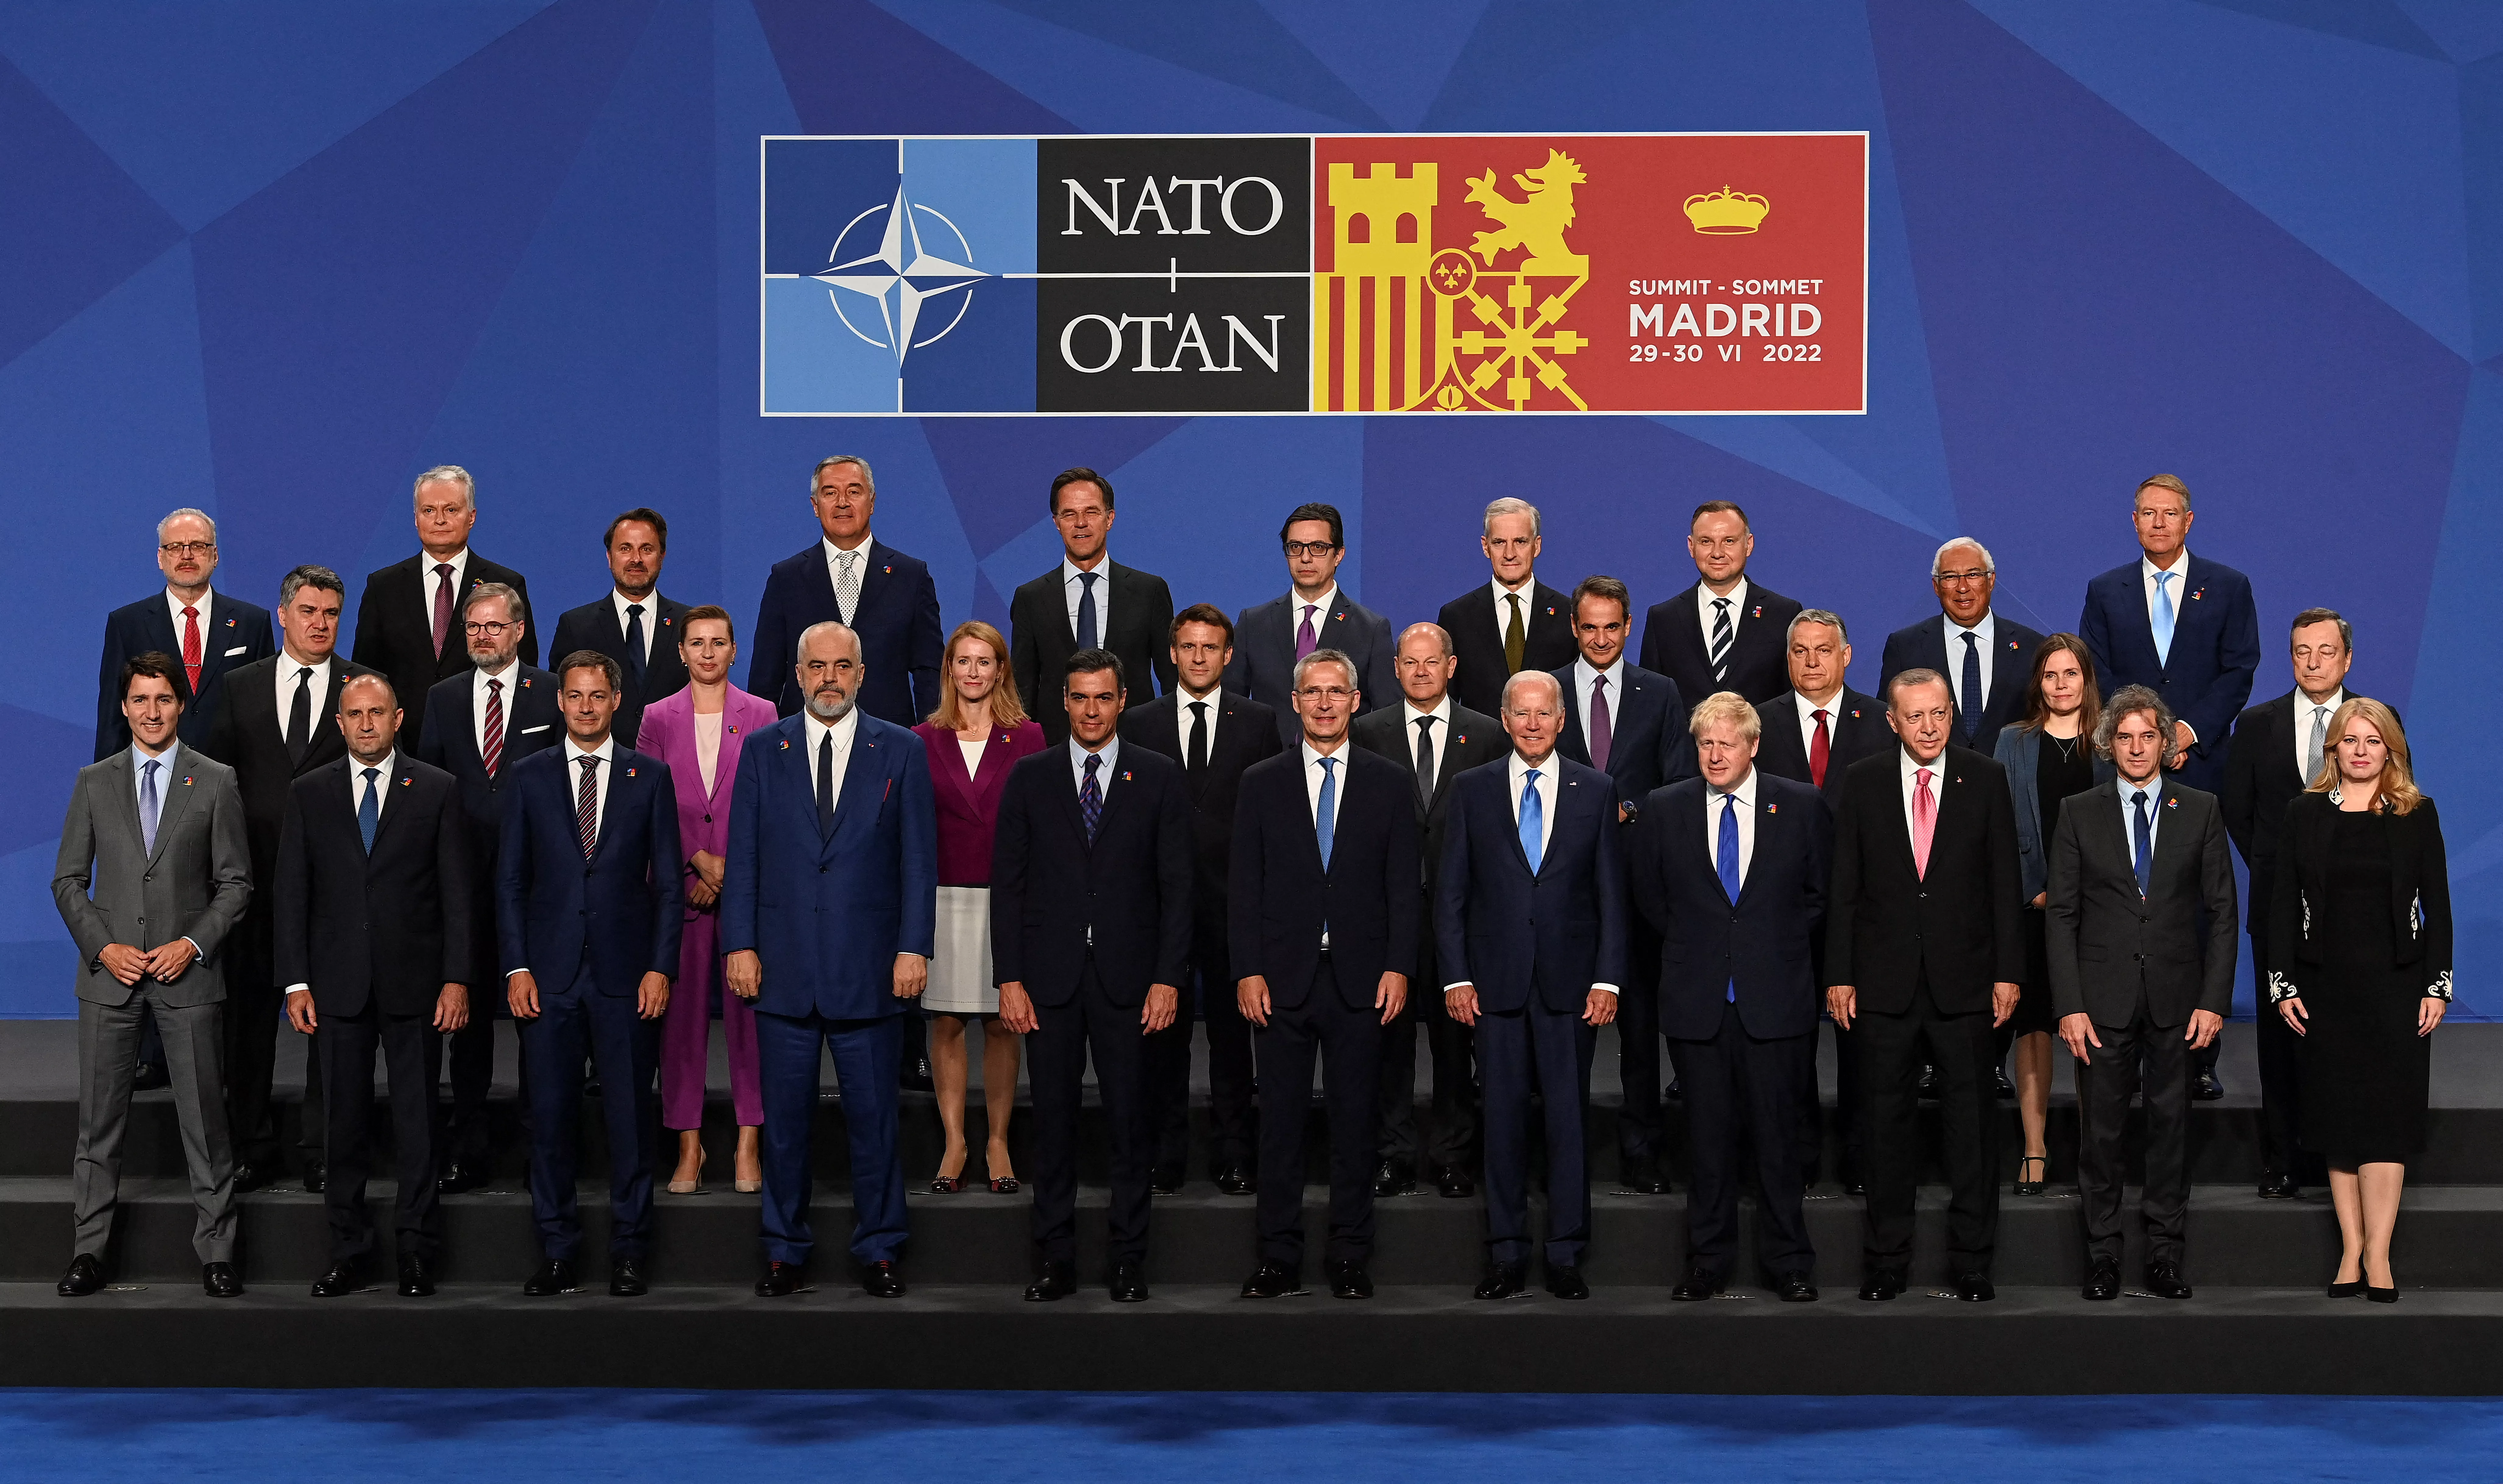 Глава альянса нато. Саммит НАТО 2022. Саммит НАТО В Мадриде 2022. Мадридский саммит НАТО. Участники саммита НАТО 2022.